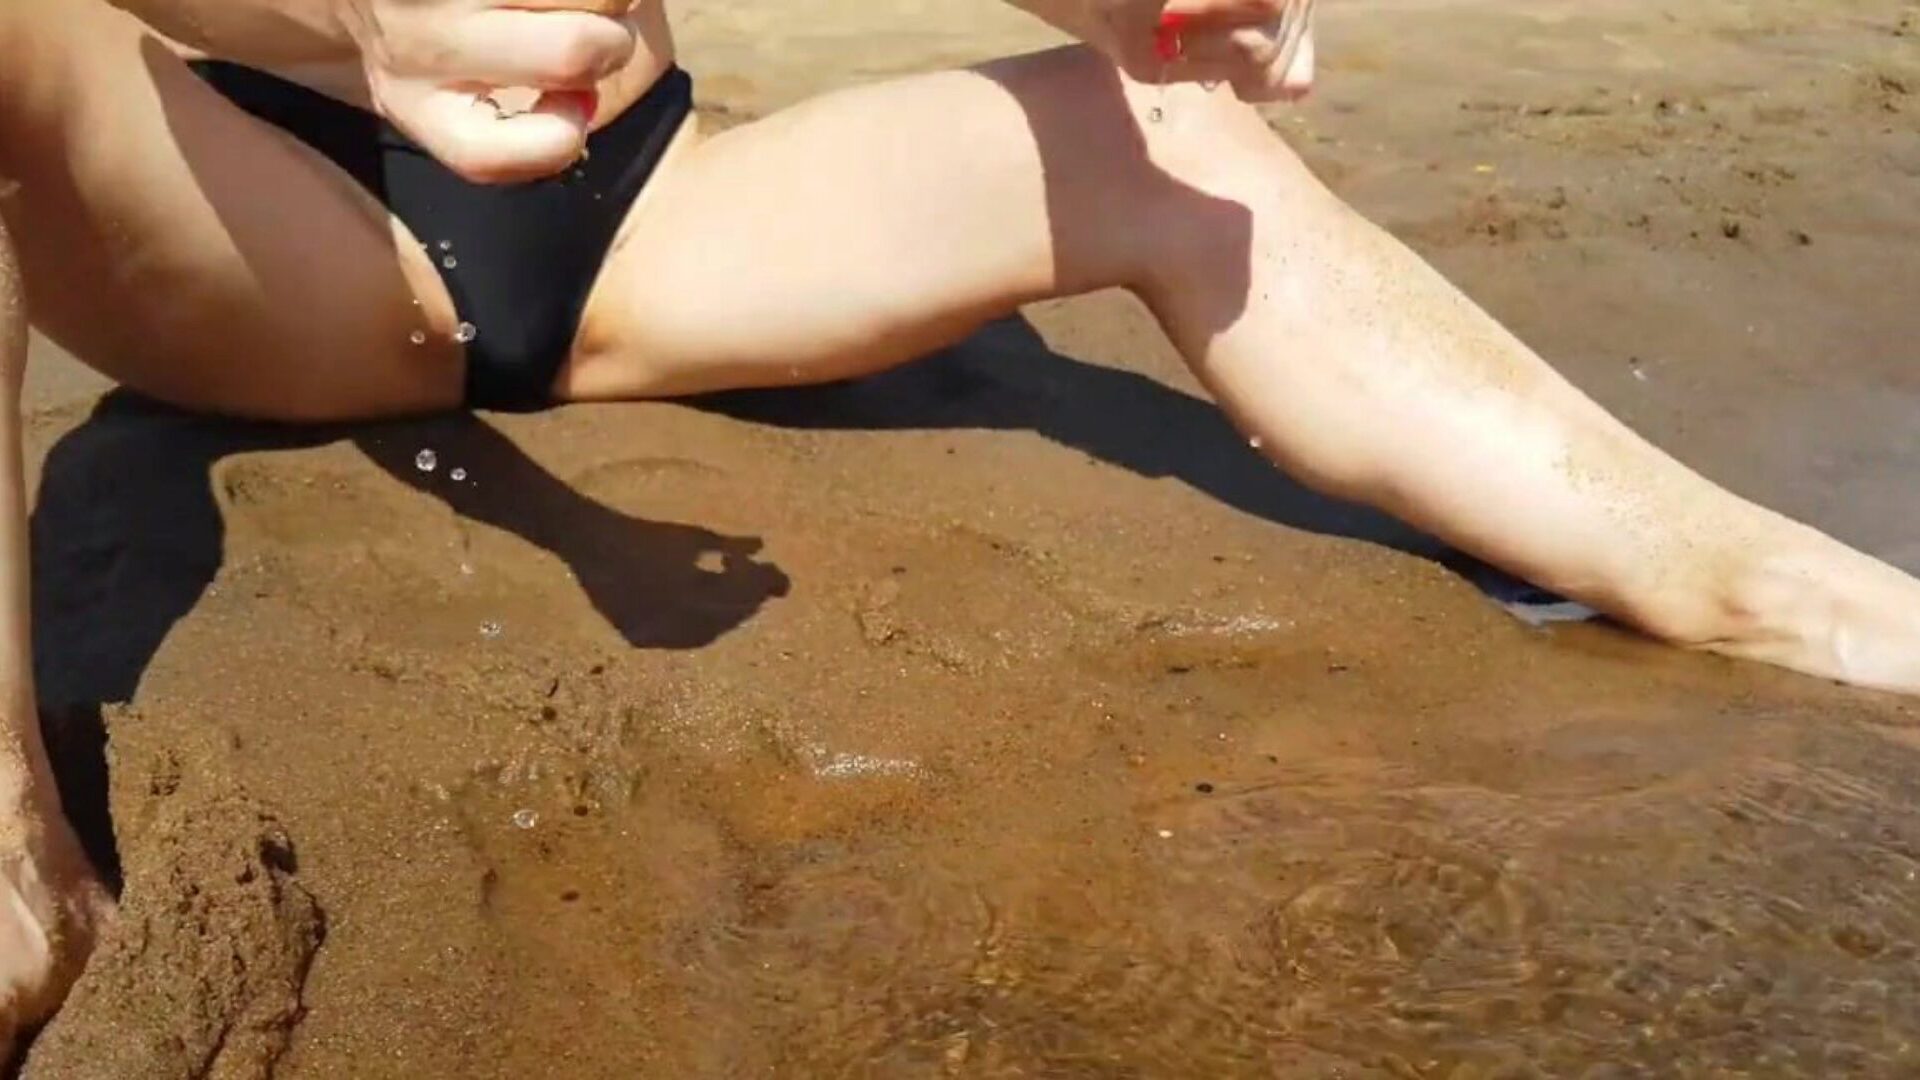 adolescente digitación en una playa pública y obtiene un orgasmo realmente genial - apretado coño playskitty ultra hd 4k